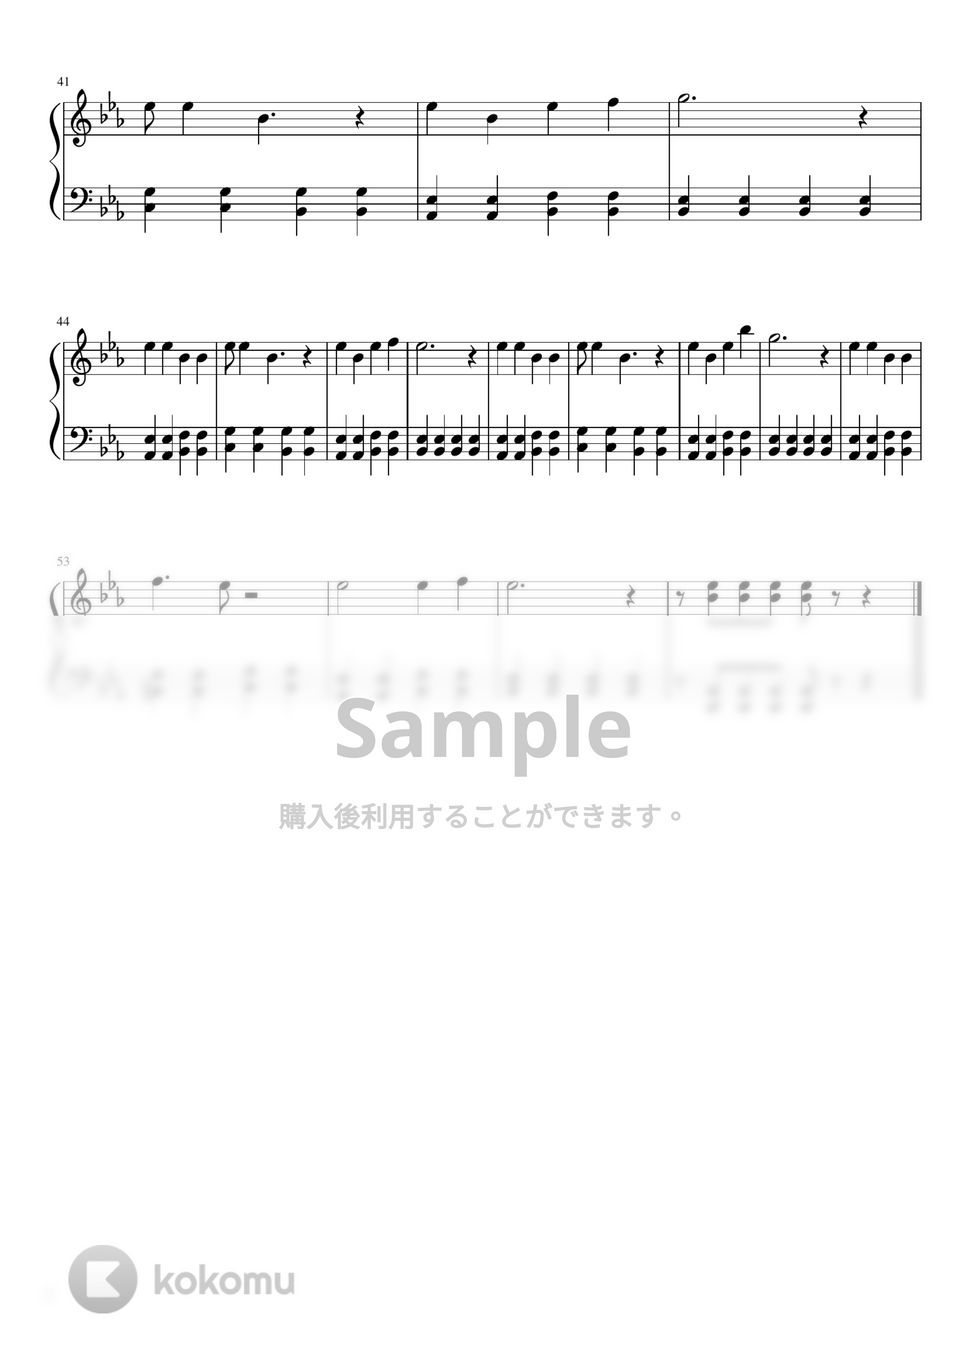 すとぷり - おかえりらぶっ! (おかえり / honey / 初級) by orinpia music